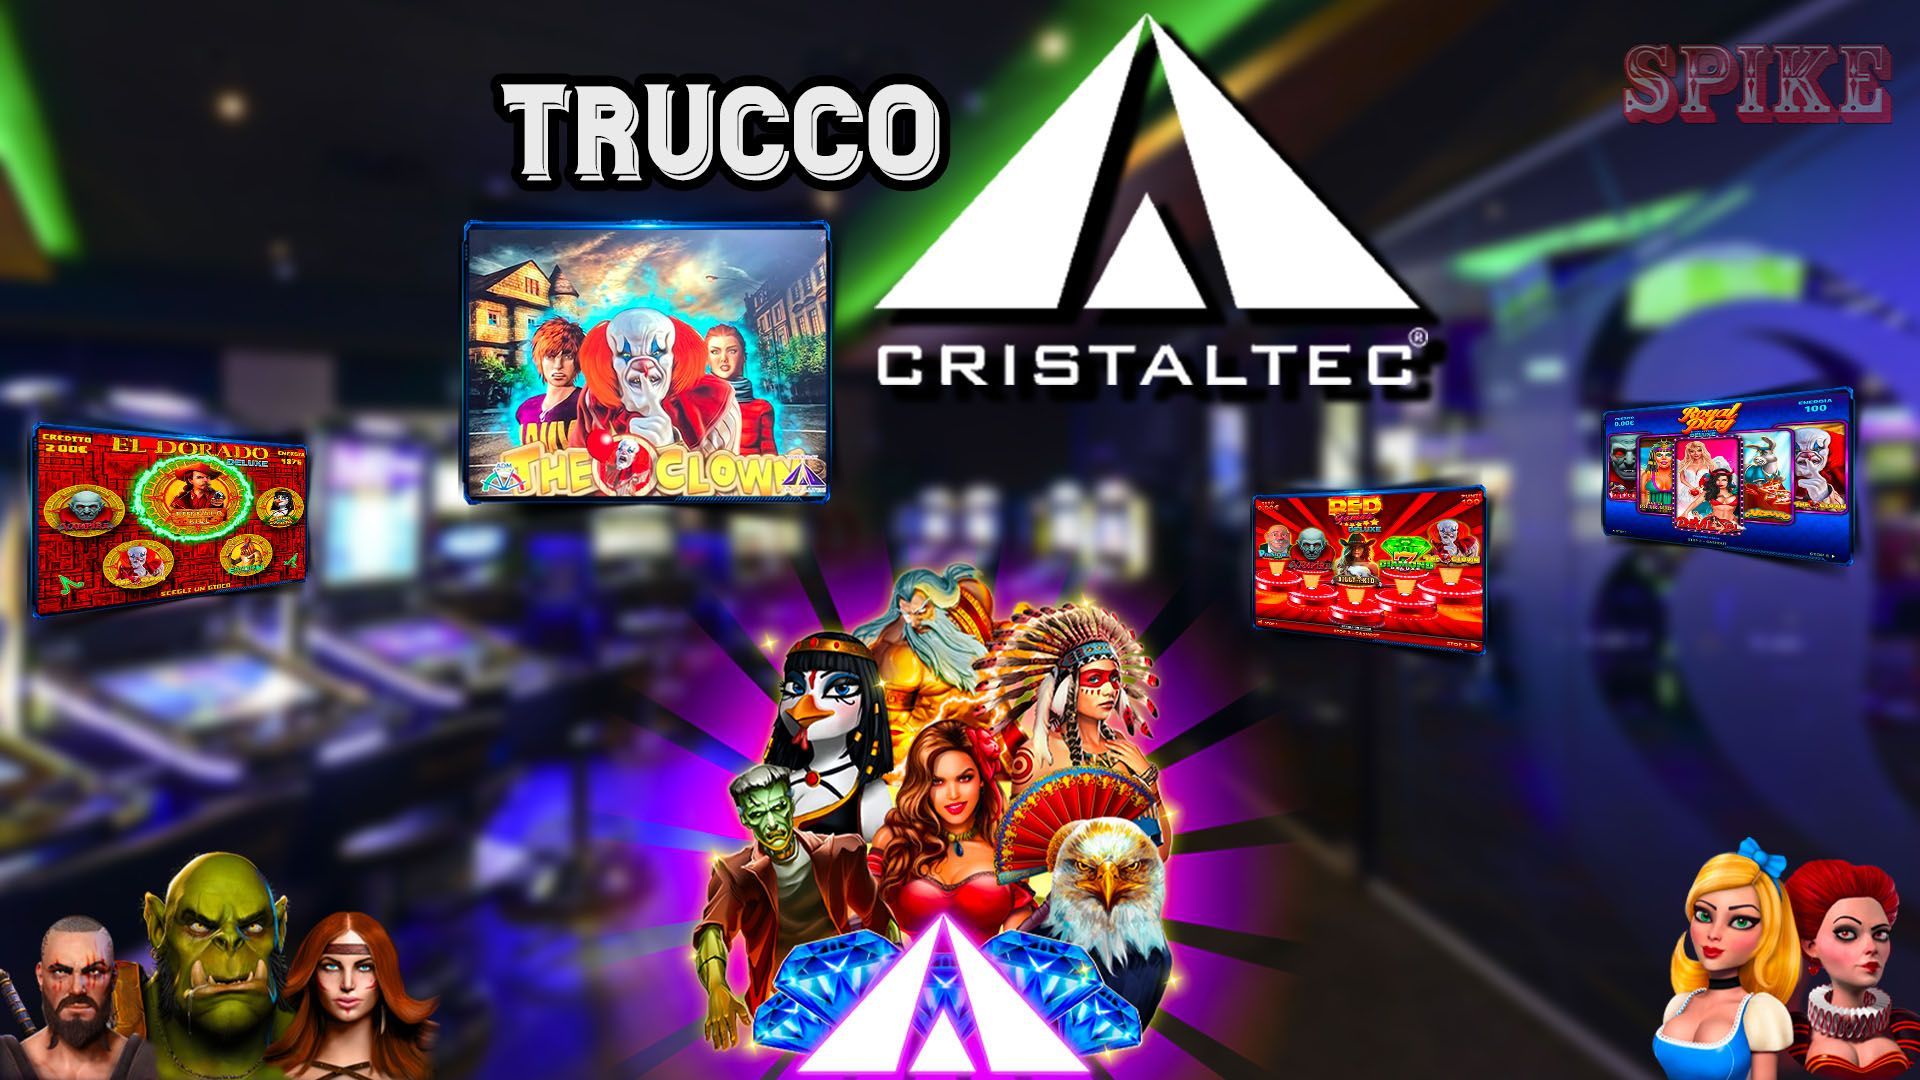 Trucco Slot Clown Cristaltec Logo Articolo